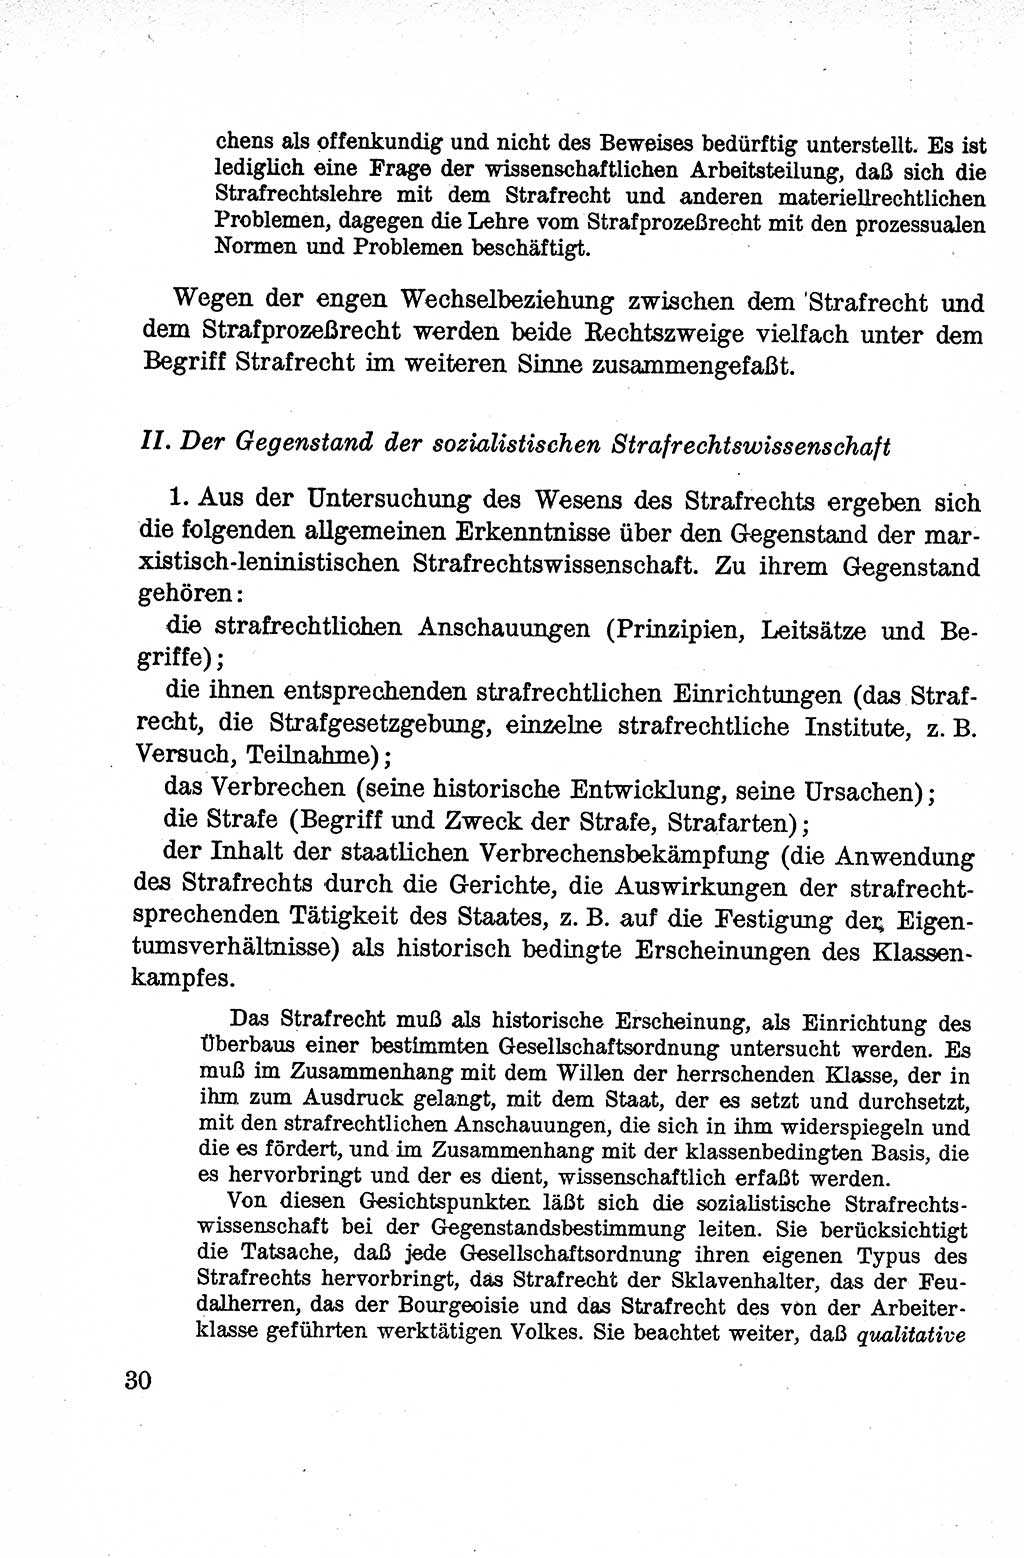 Lehrbuch des Strafrechts der Deutschen Demokratischen Republik (DDR), Allgemeiner Teil 1959, Seite 30 (Lb. Strafr. DDR AT 1959, S. 30)